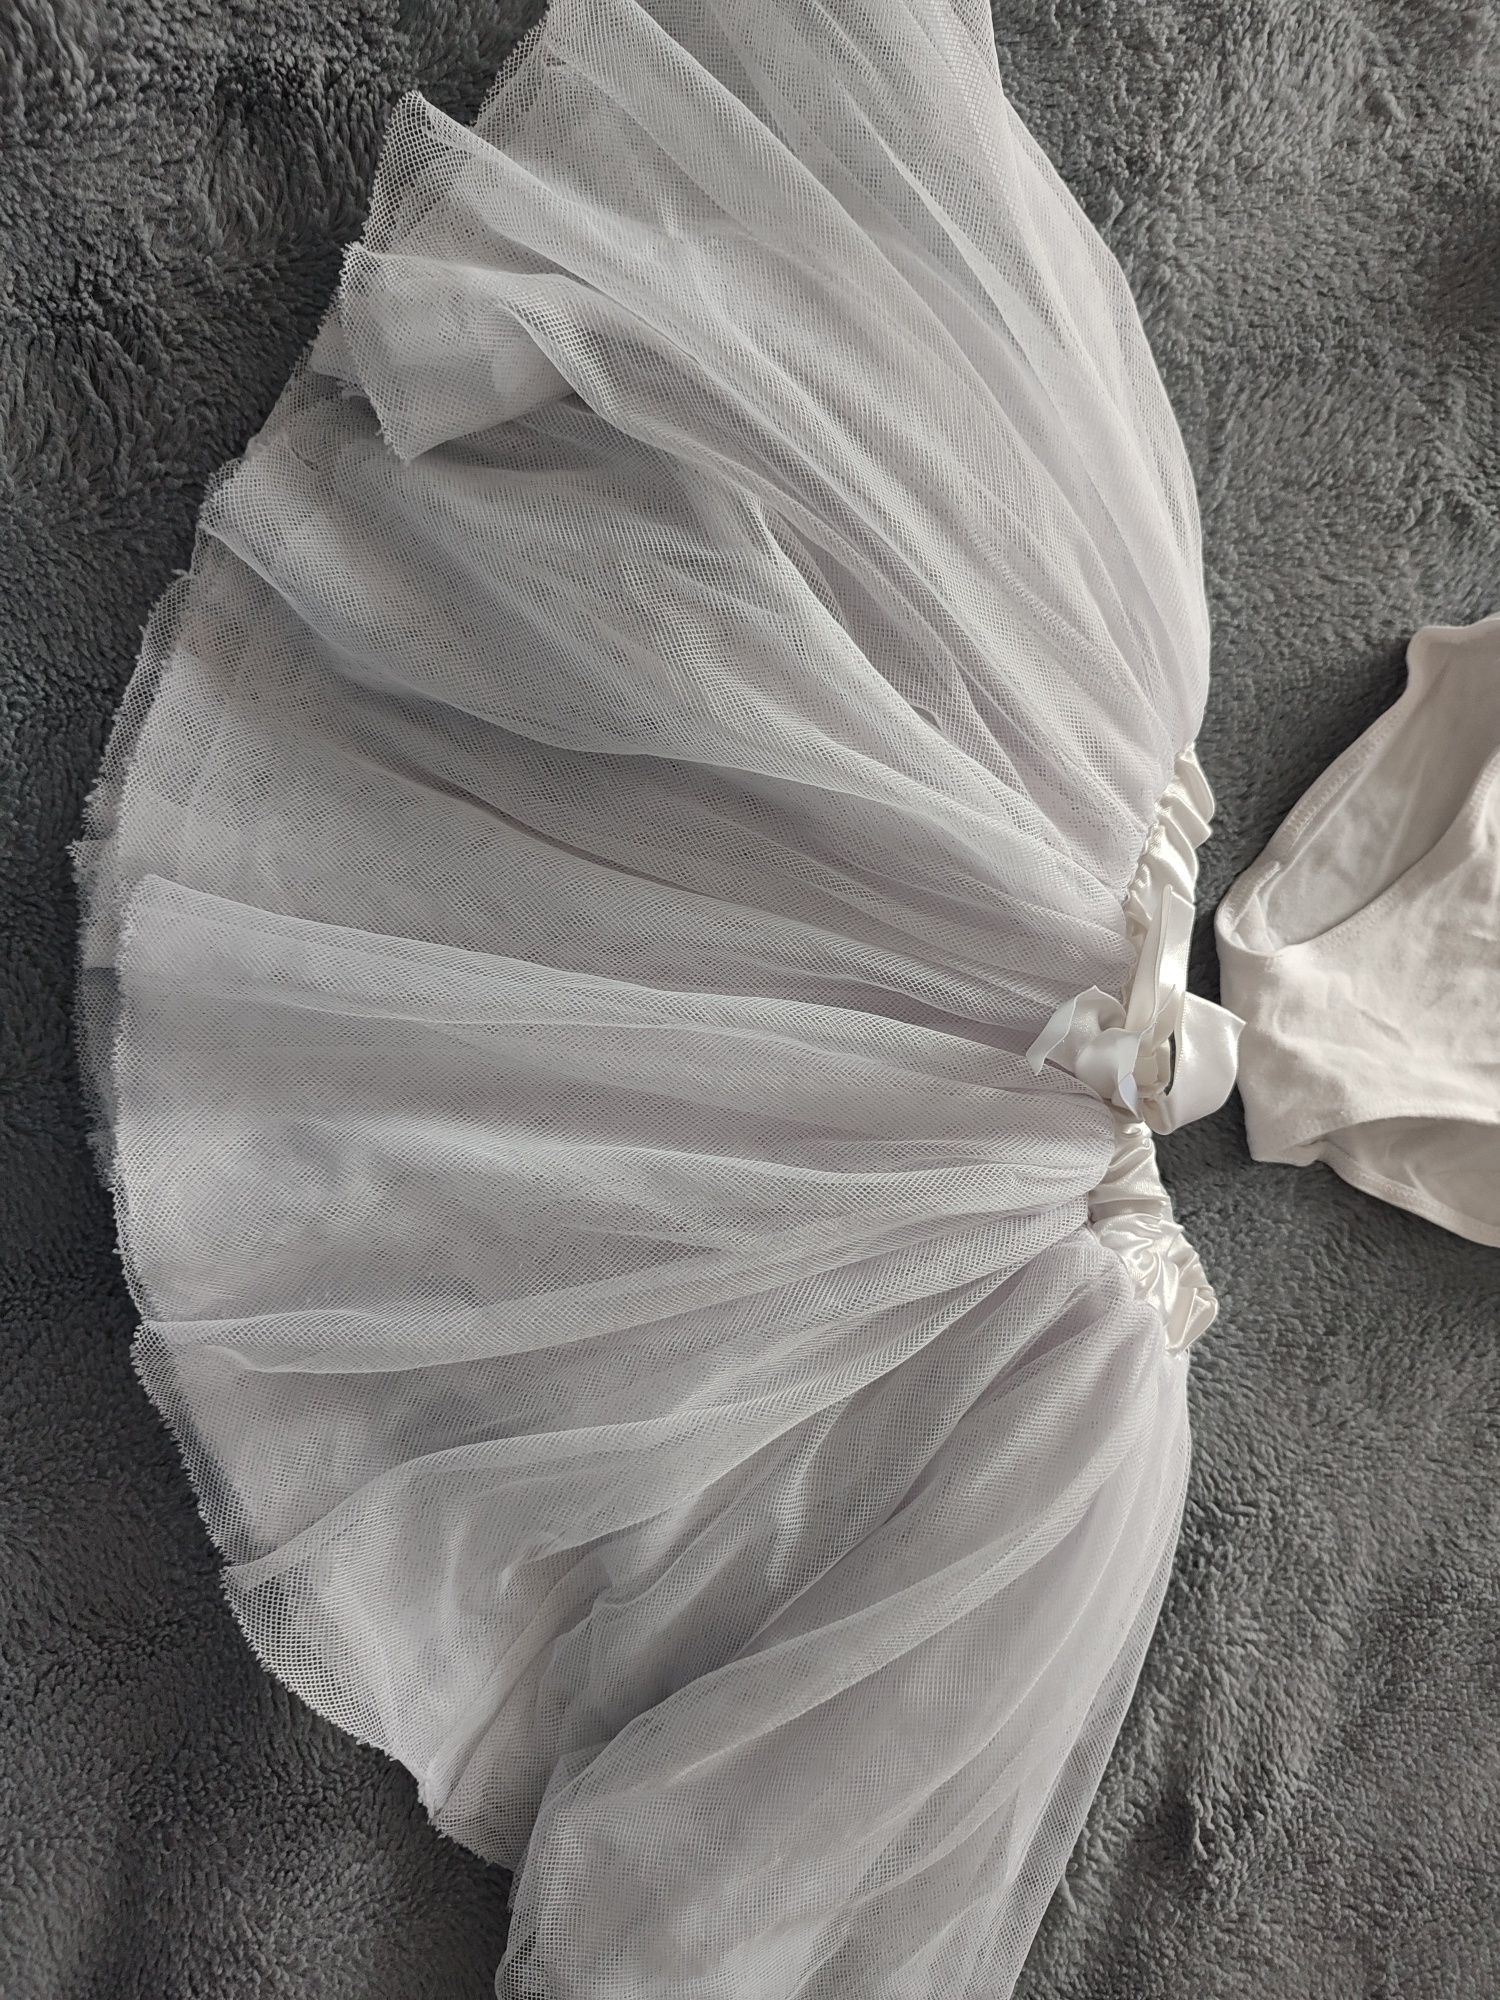 Arabesque biała baletnica strój body spódniczka 110/116